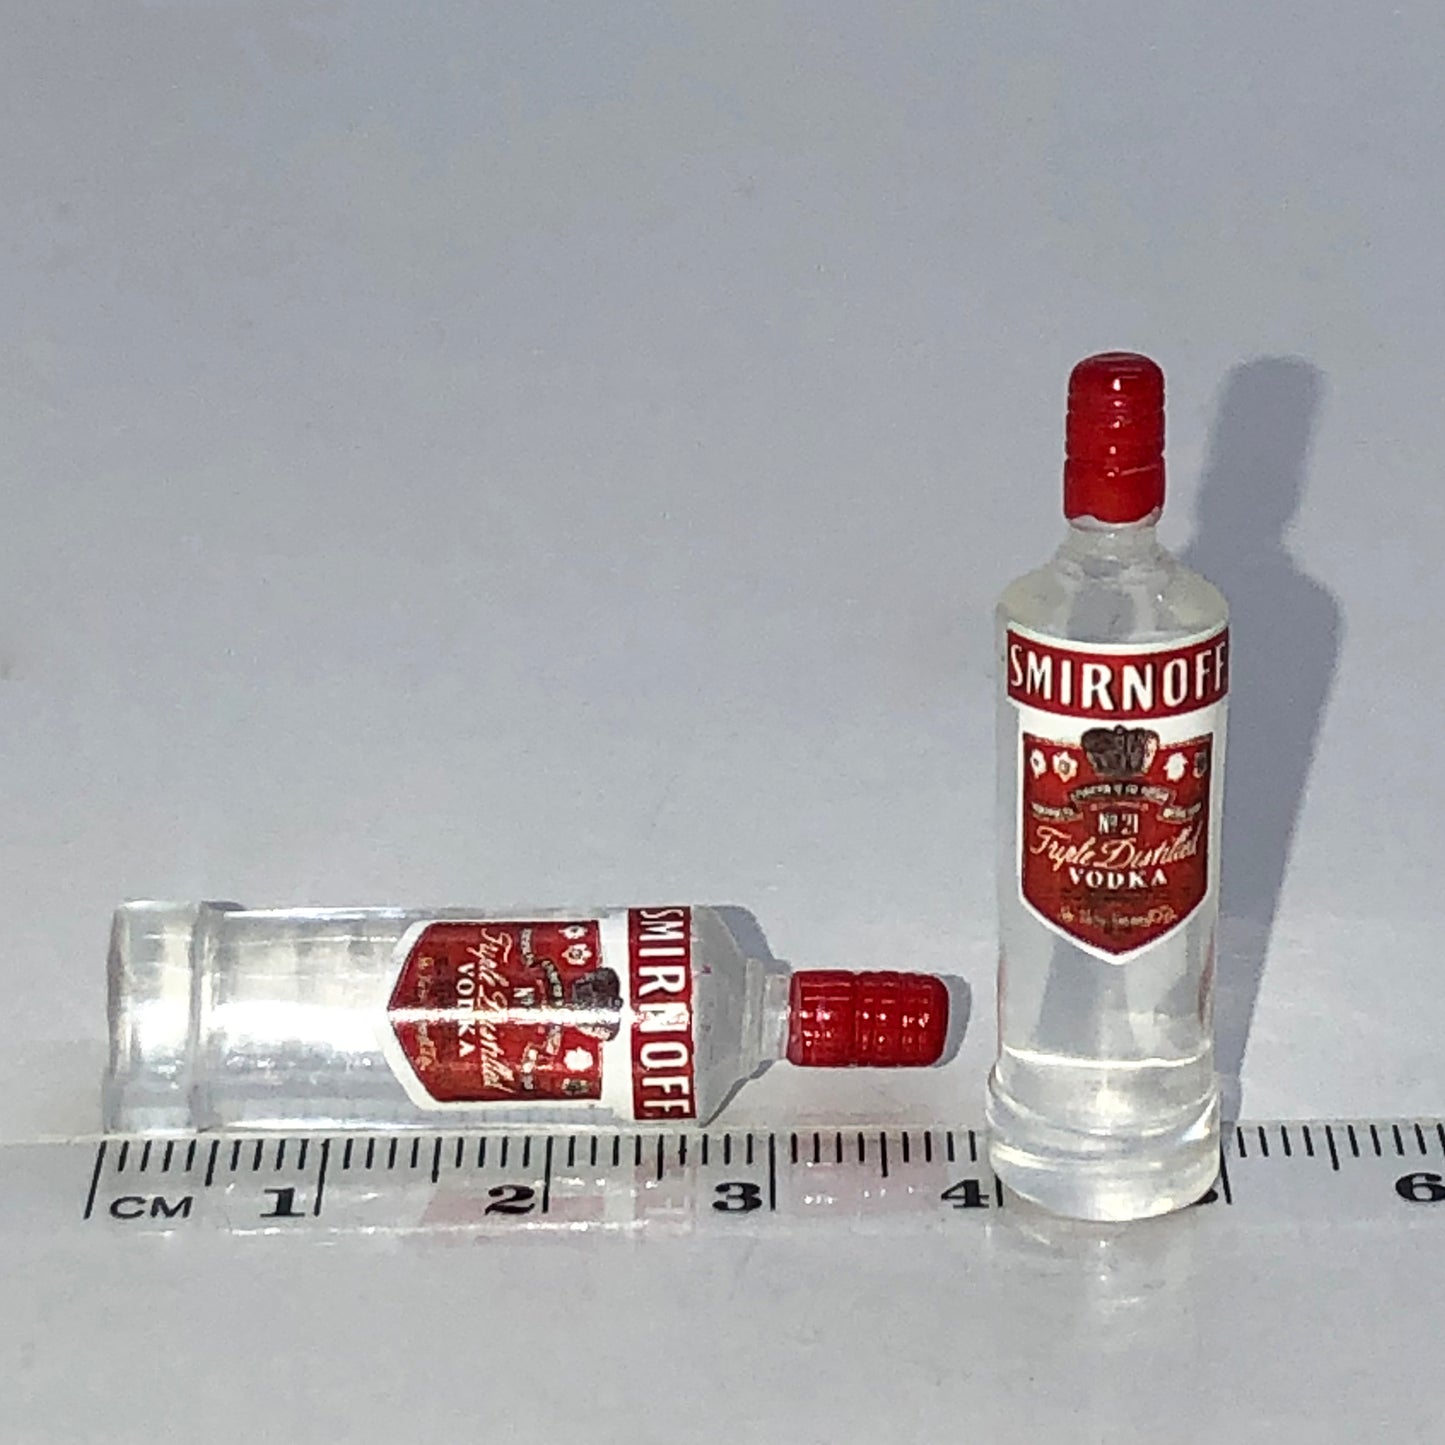 A bottle of Russian vodka 